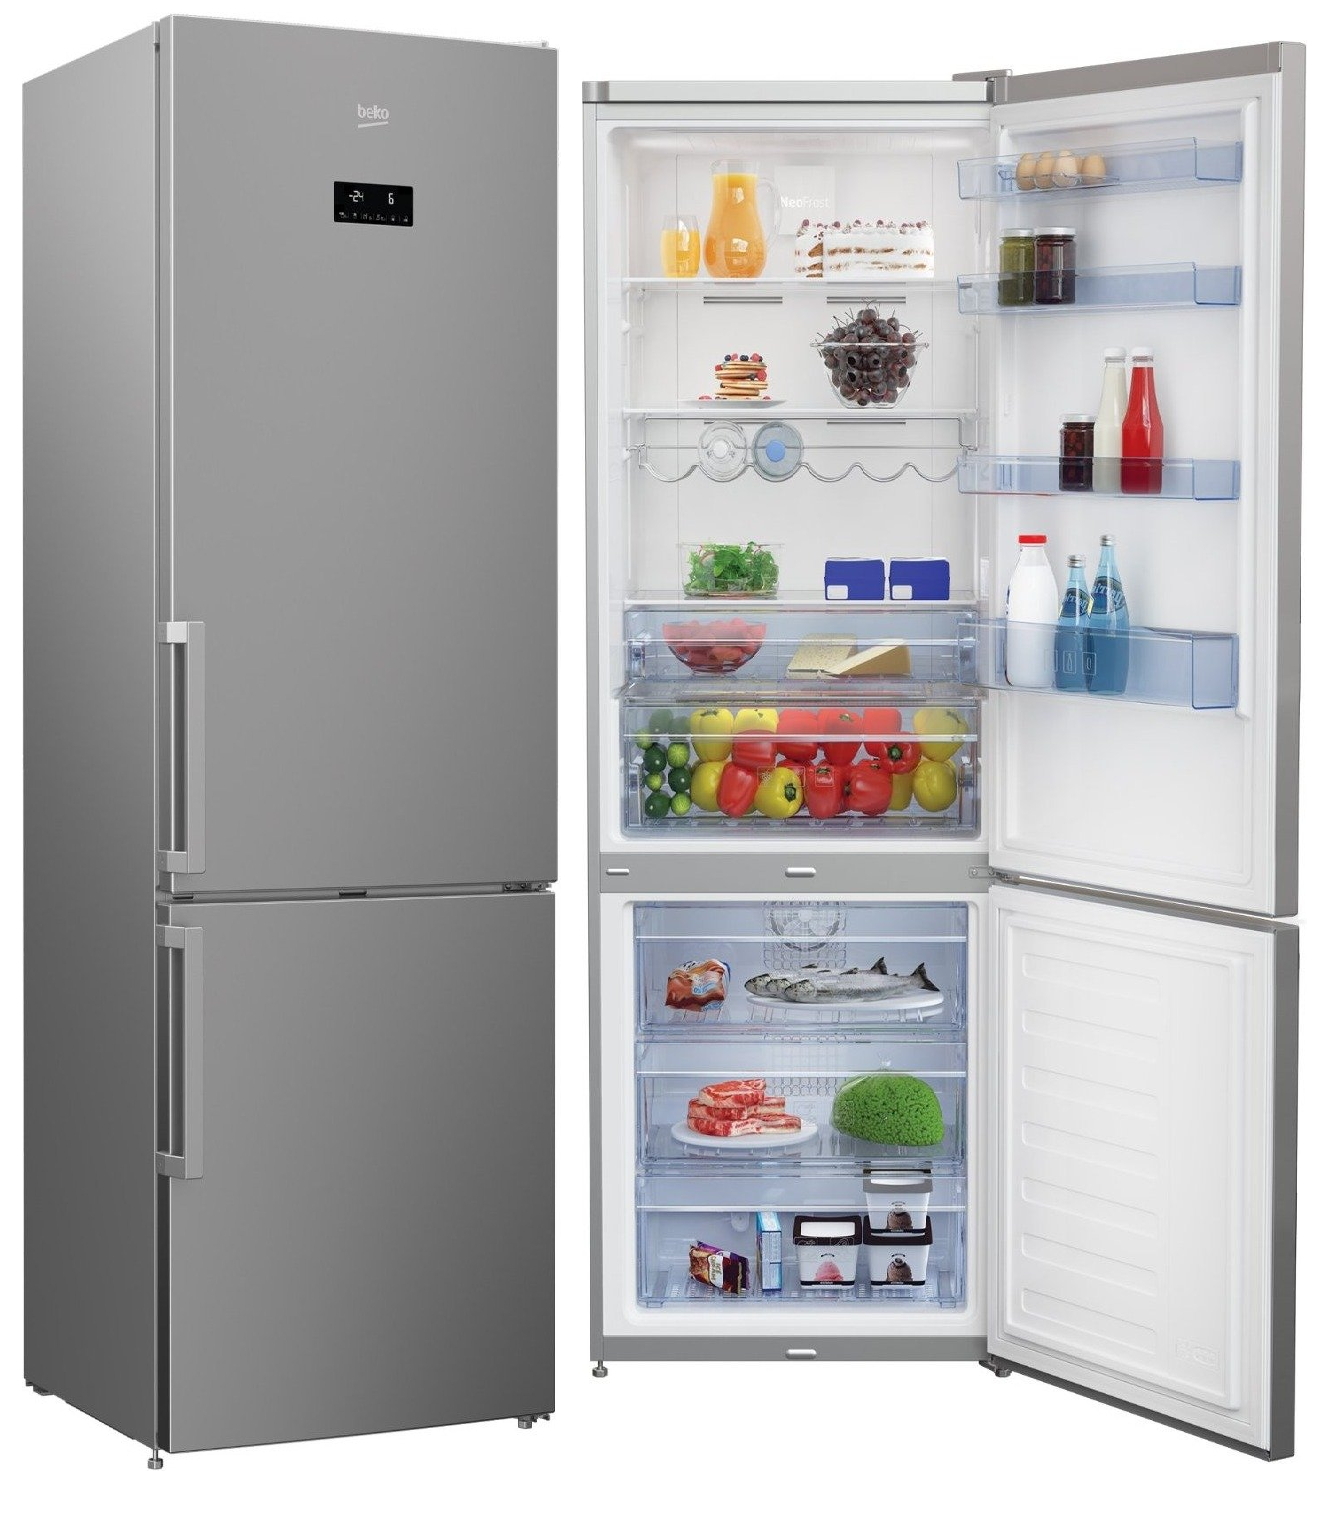 Недорогой холодильник no frost. Холодильник БЕКО в3rcnk402hx. Холодильник-морозильник, марки БЕКО модель cnkl7321ecow. Холодильник Beko CNKL 7321 ec0s. Холодильник БЕКО rcnk400e30zw.